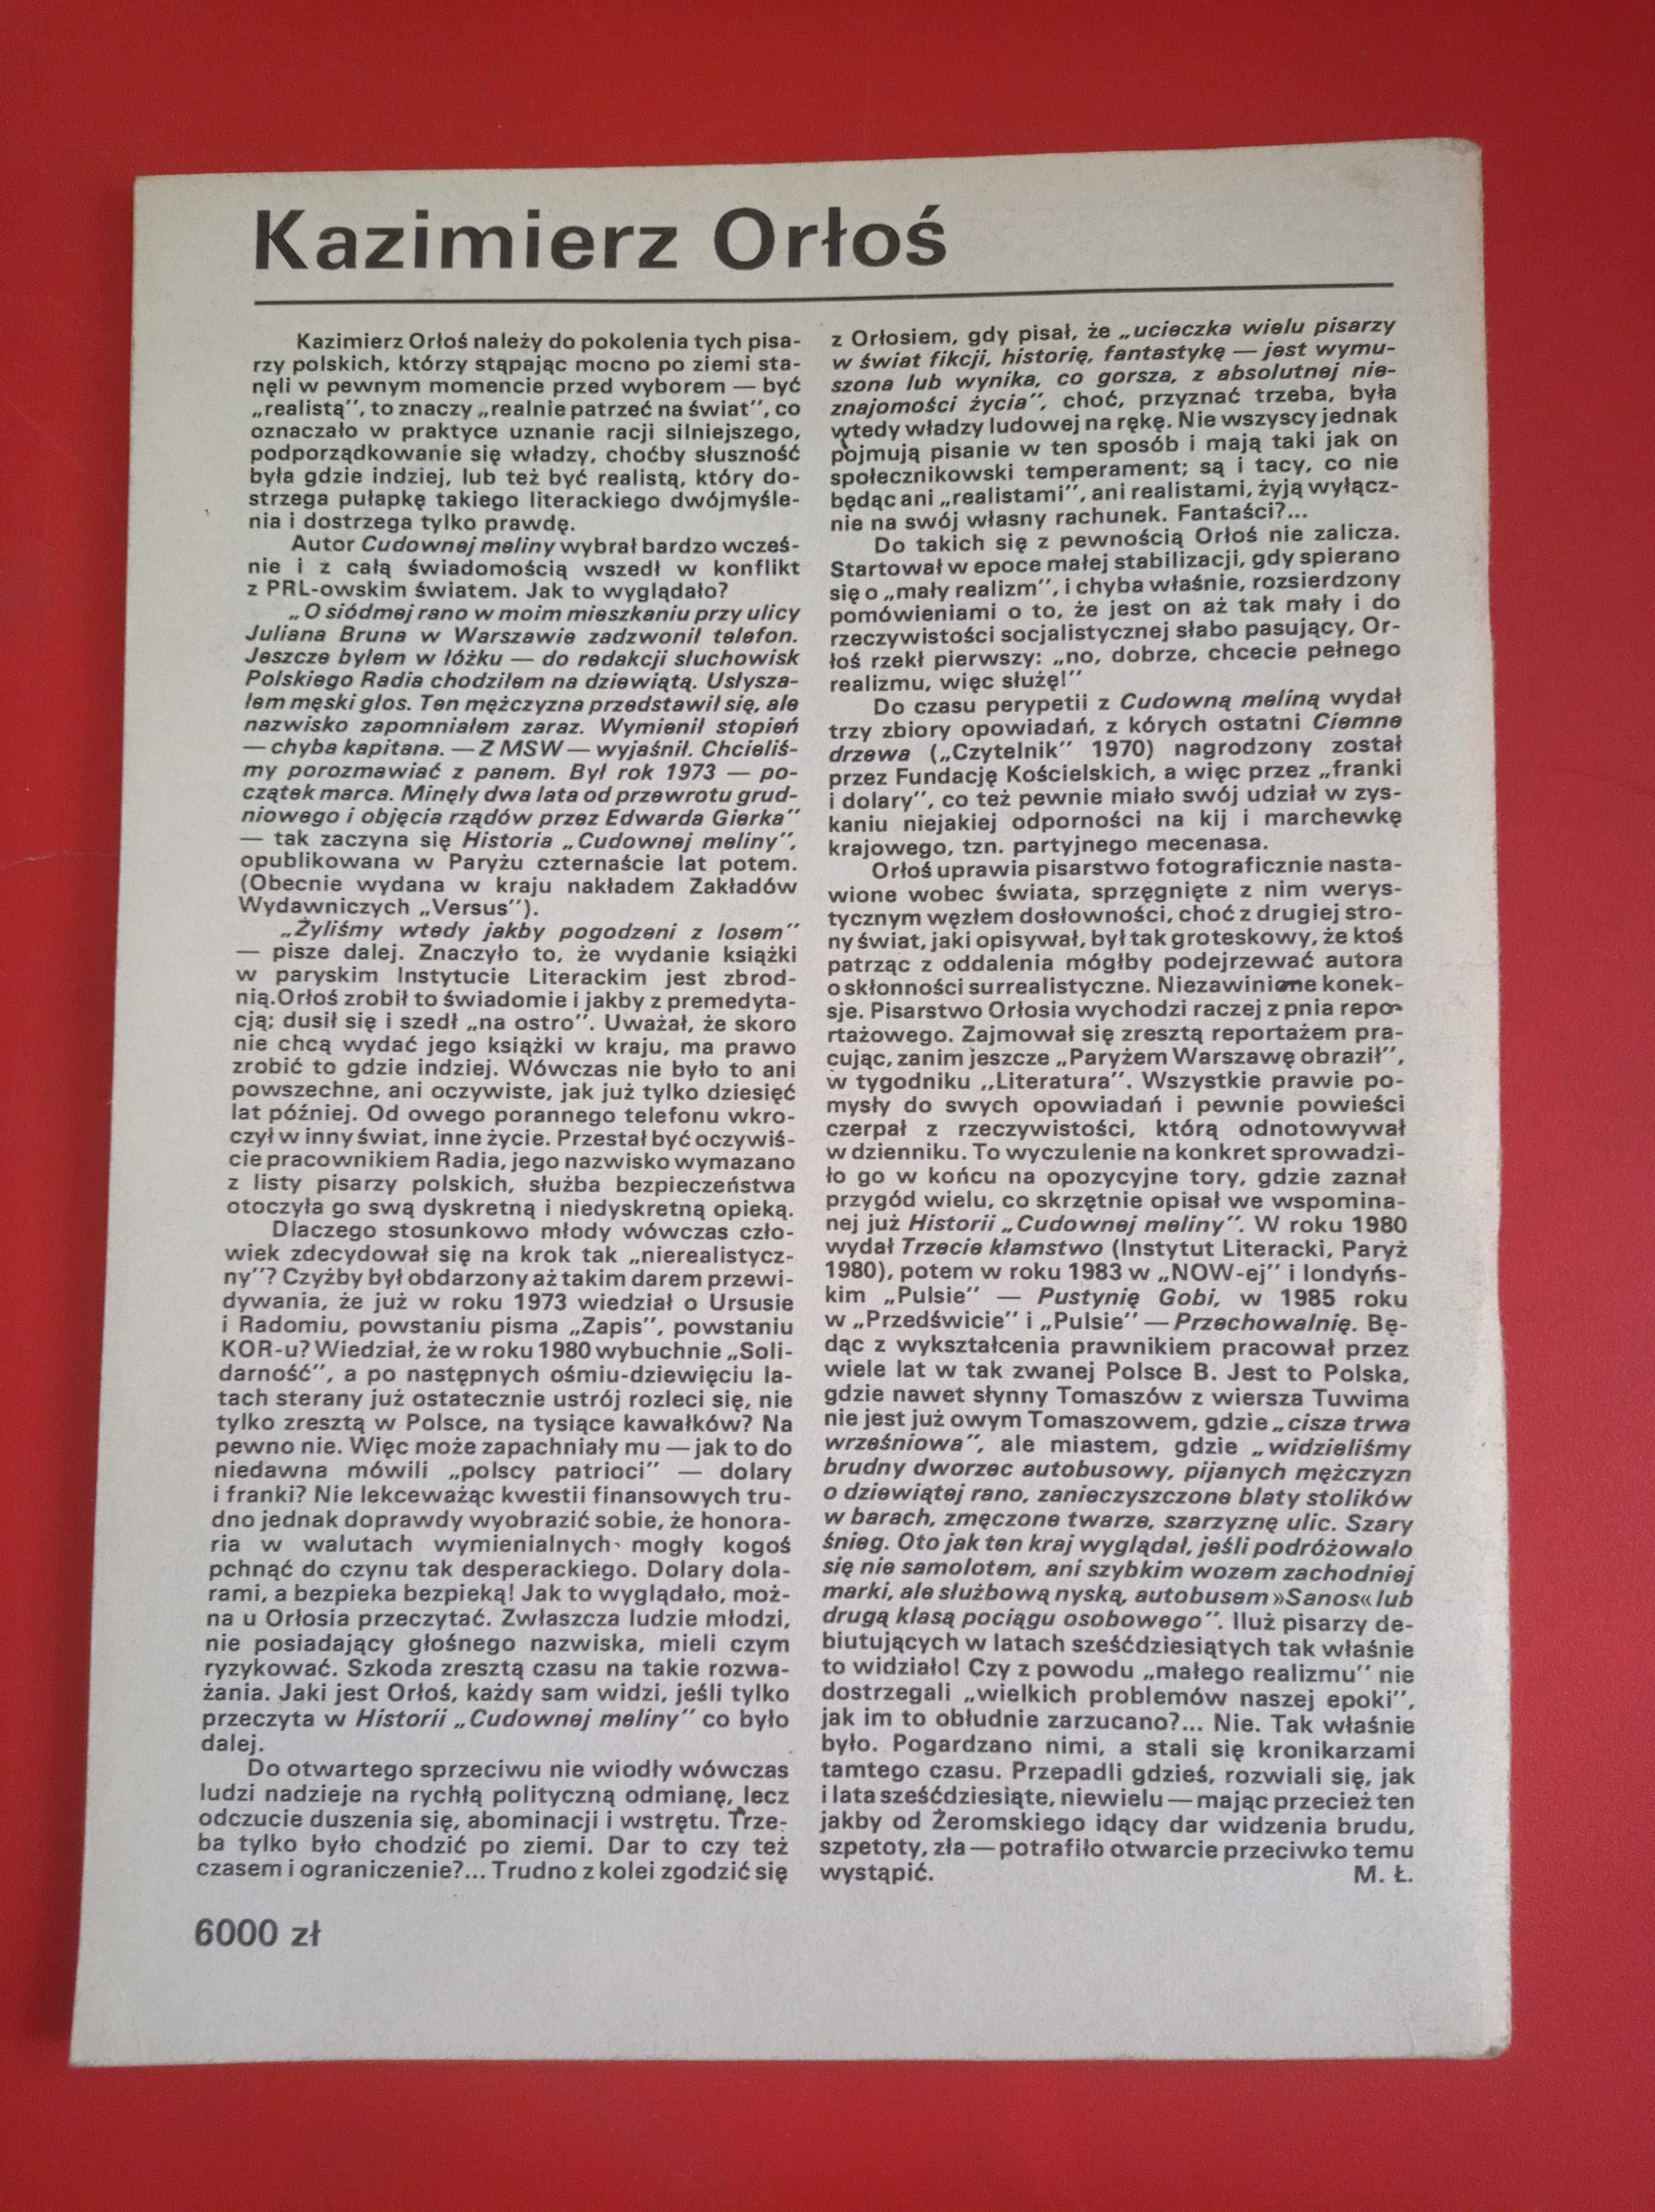 Nowe książki, nr 2, luty 1991, Kazimierz Orłoś